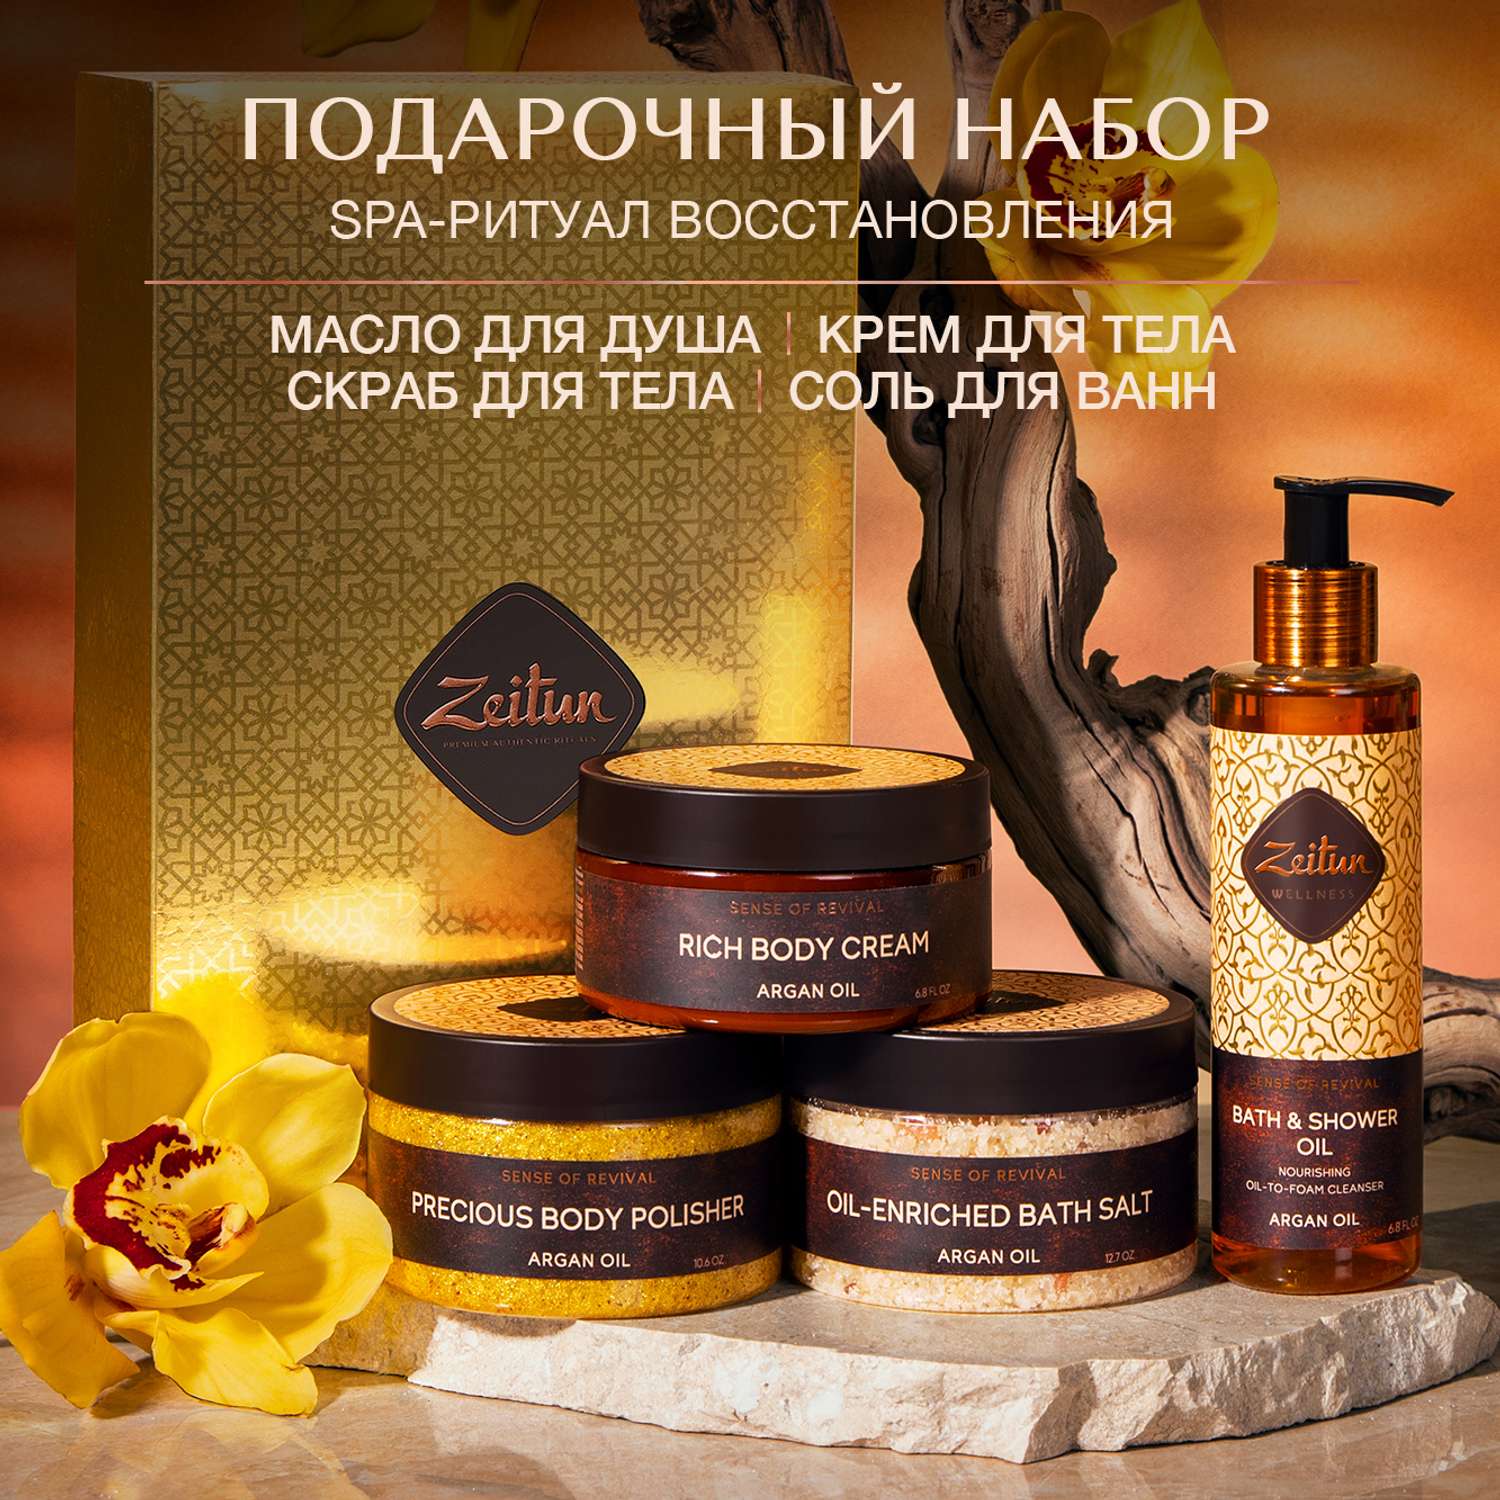 Подарочный набор Zeitun SPA-ритуал восстановления крем соль масло для душа и скраб для тела - фото 2